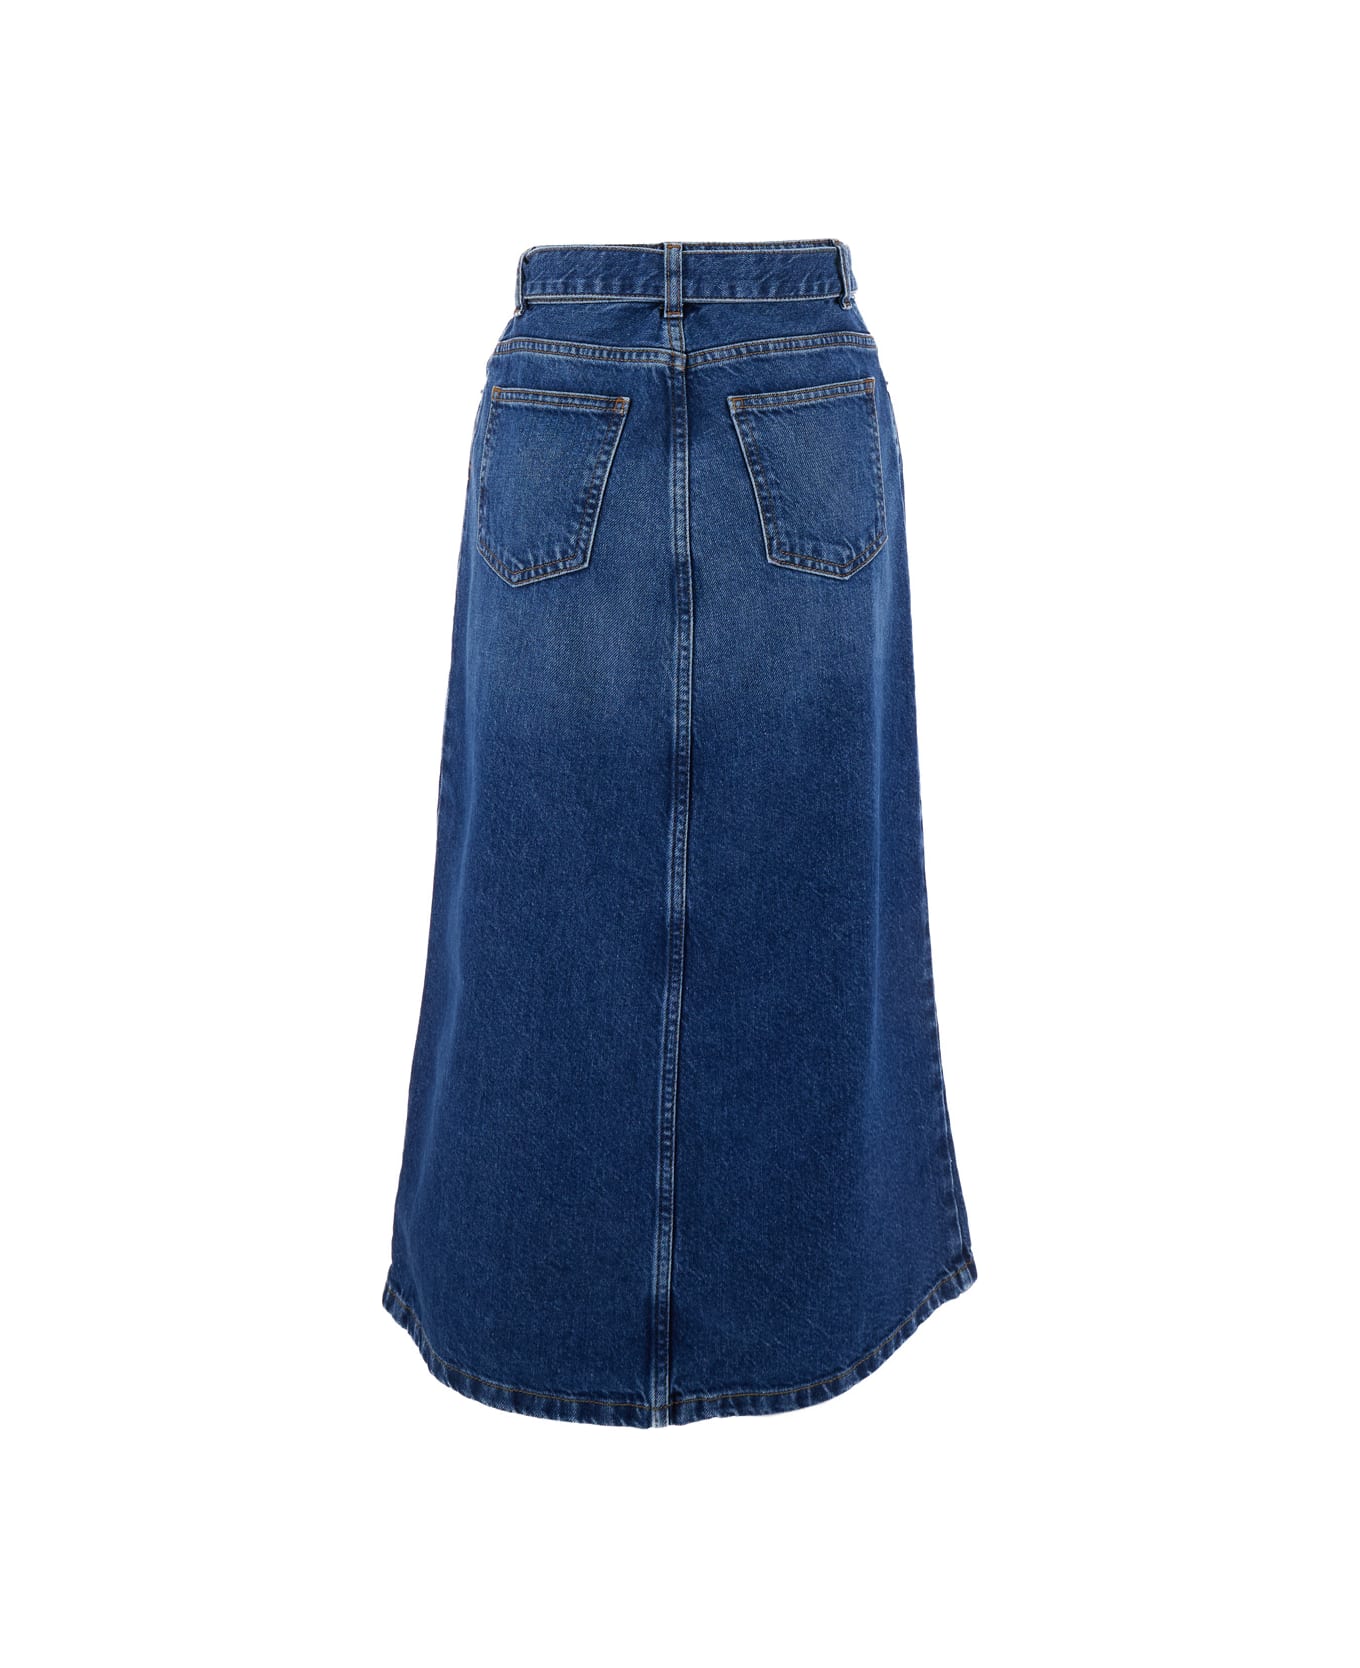 TwinSet Denim Skirt - Blue スカート